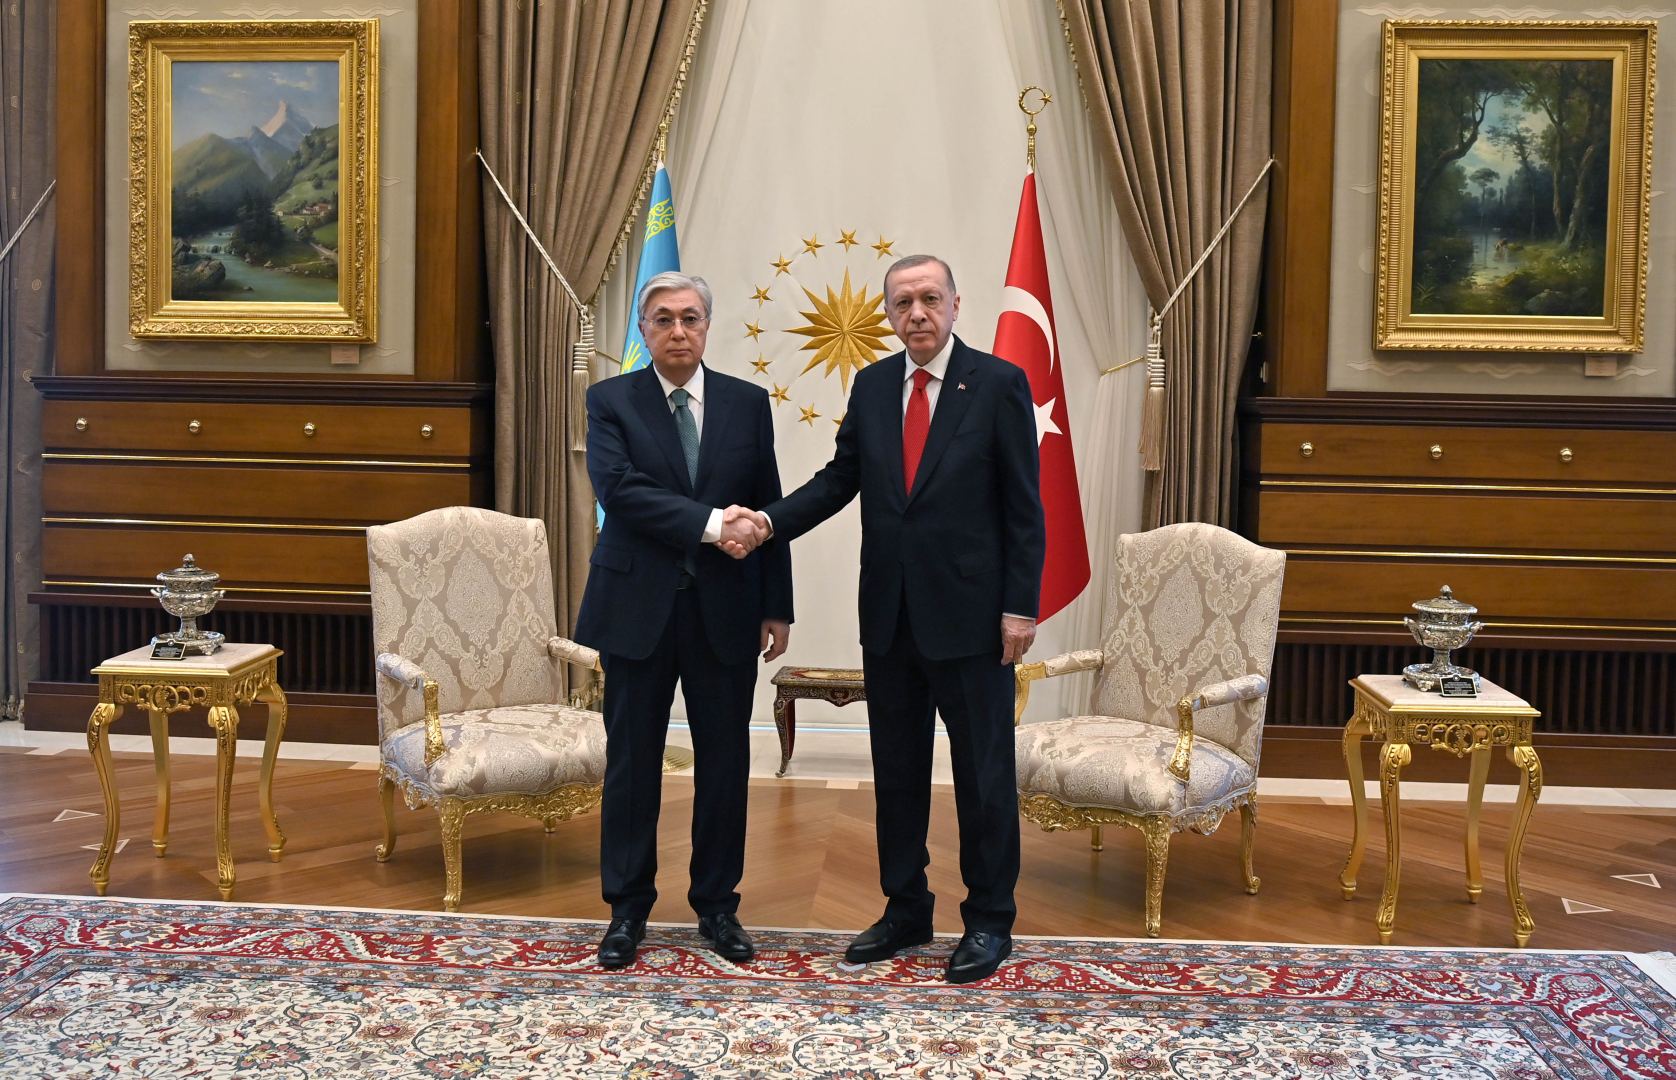 Токаев и Эрдоган обсудили перспективы углубления двустороннего сотрудничества